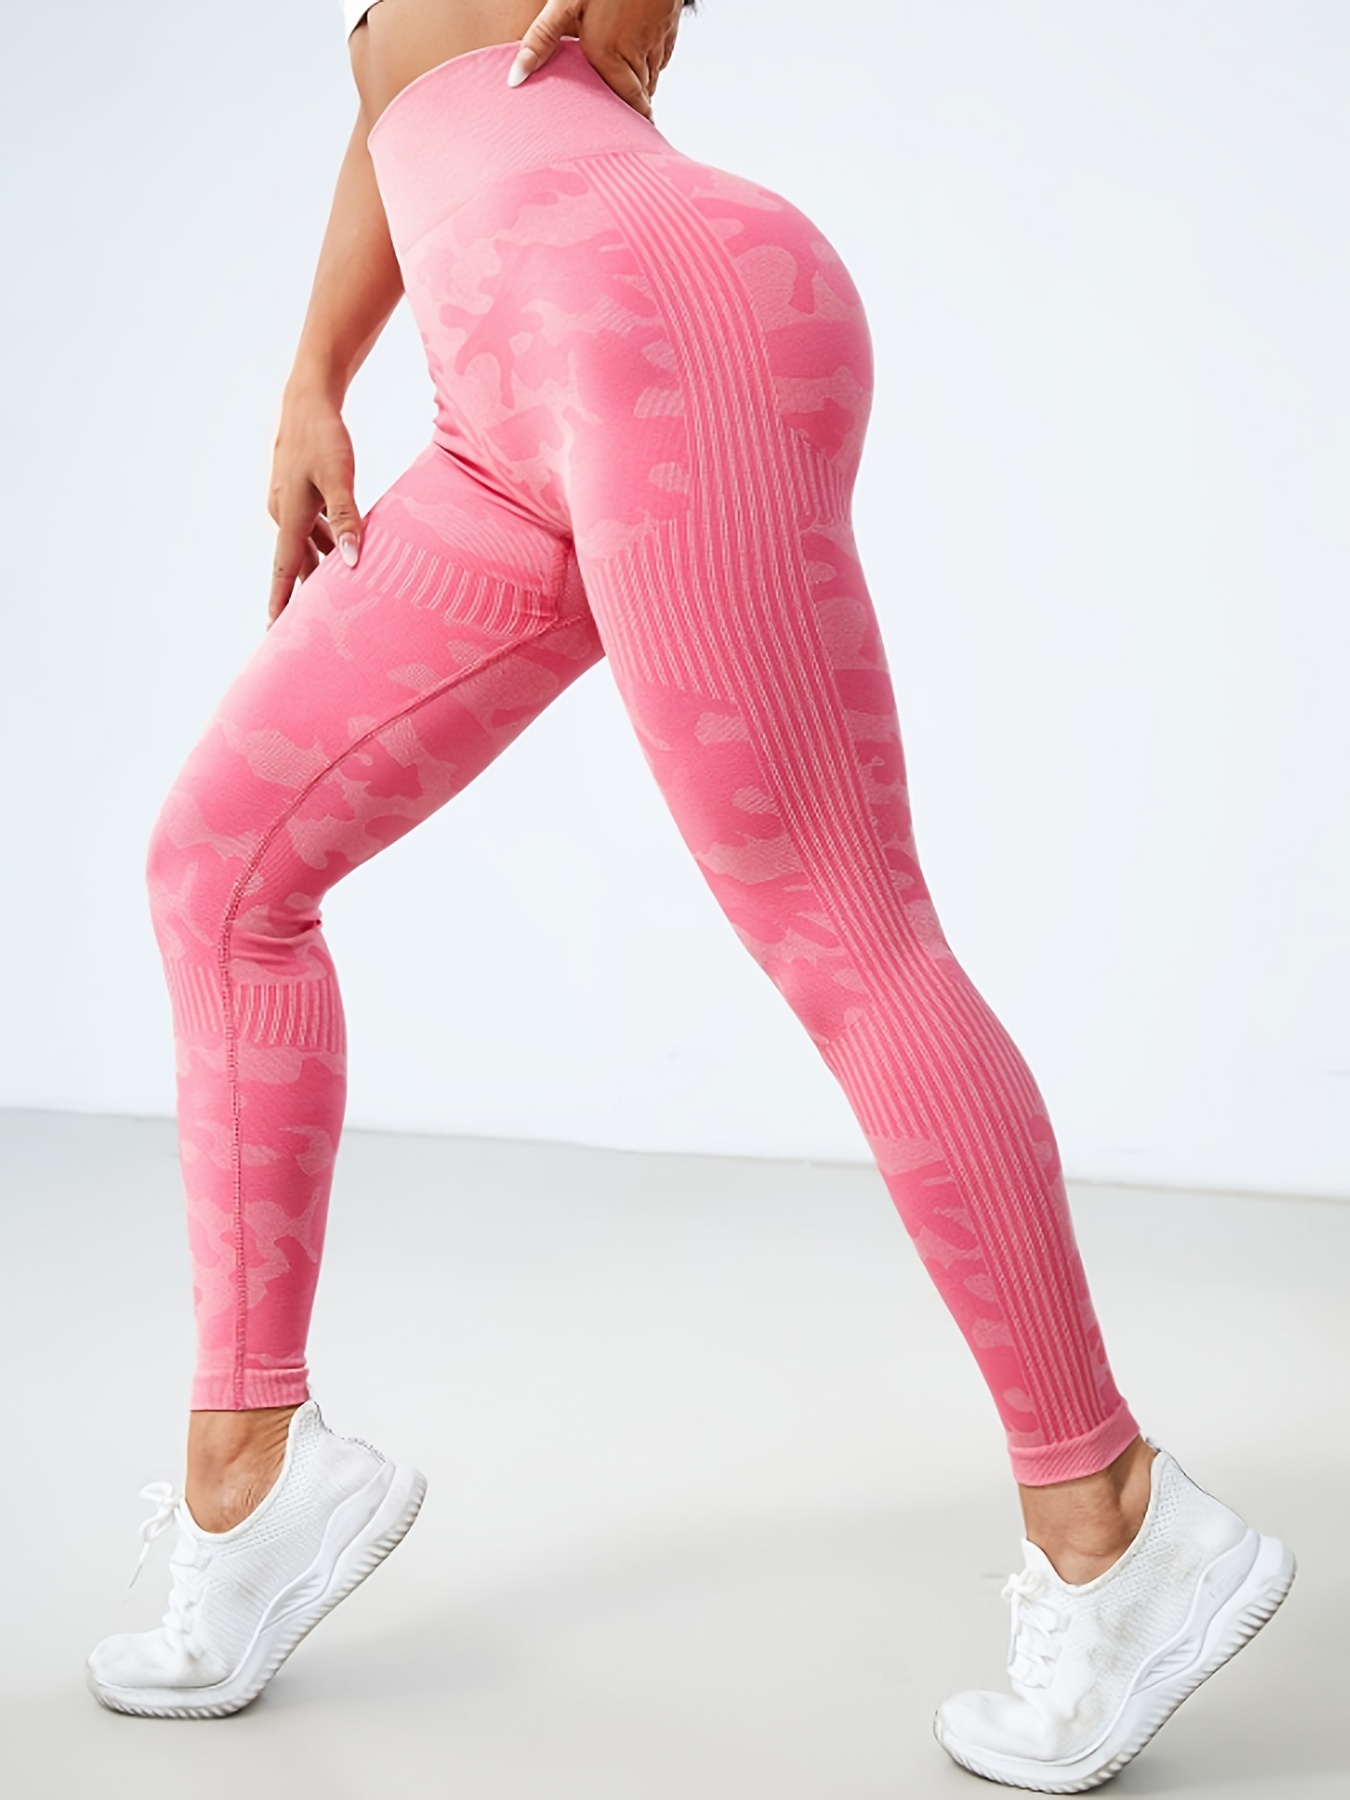 Victoria's Secret Victoria's Secret Pink Ankle Leggings Athletic Bottoms  Activewear Yoga Pants New